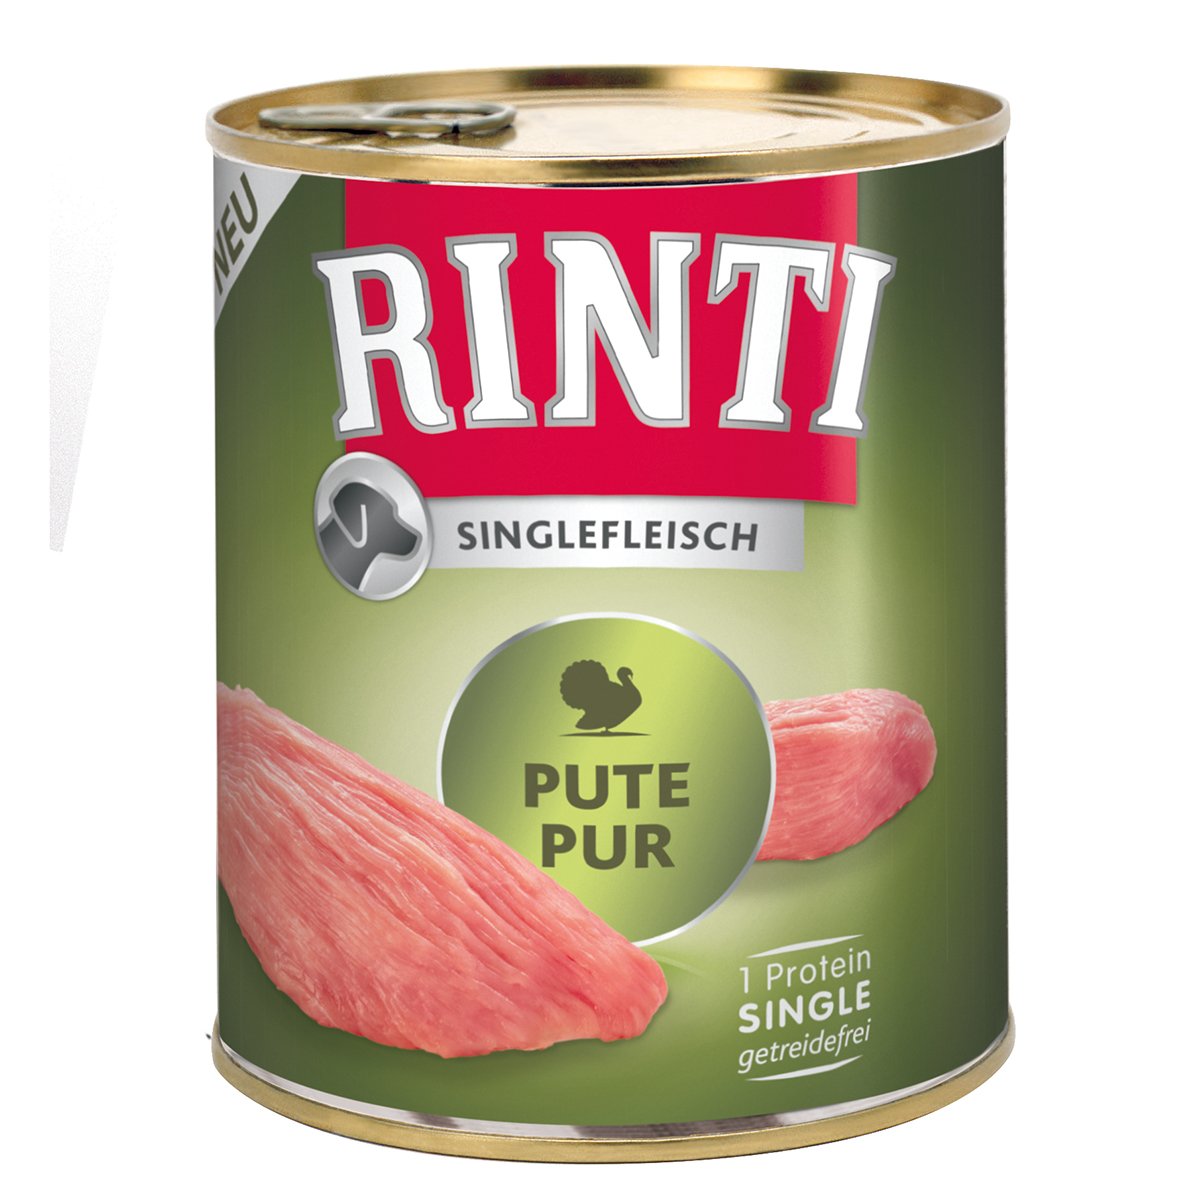 Rinti Singlefleisch Exclusive Pute pur 12x800g